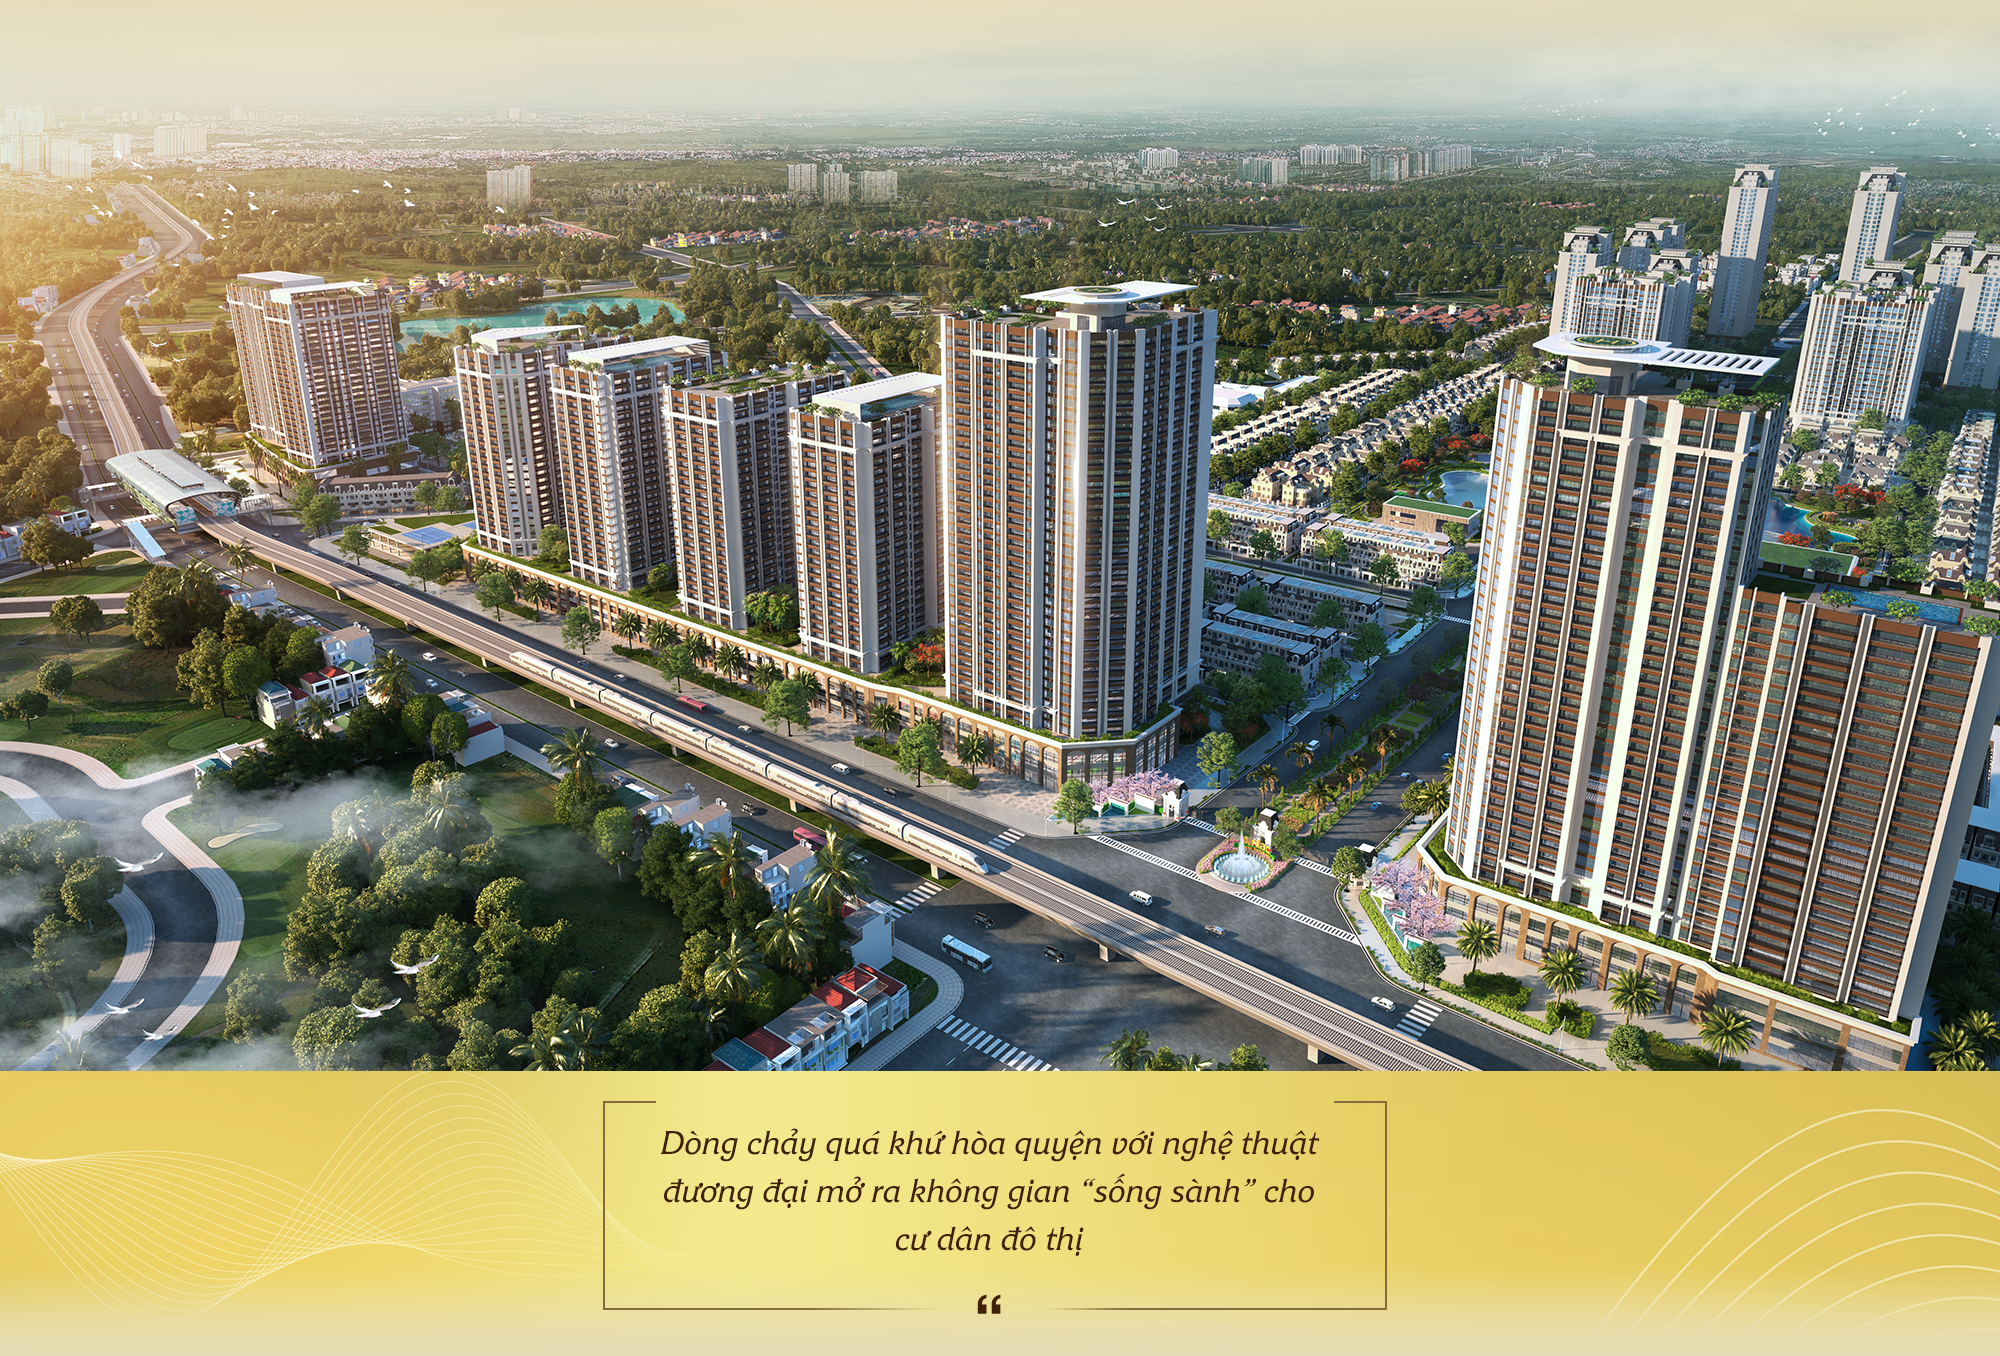 Kiến tạo mô hình đô thị “bán khép kín” đầu tiên tại phía Tây Hà Nội, Anlac Group tiếp tục khẳng định vị thế trên thị trường bất động sản - Ảnh 4.